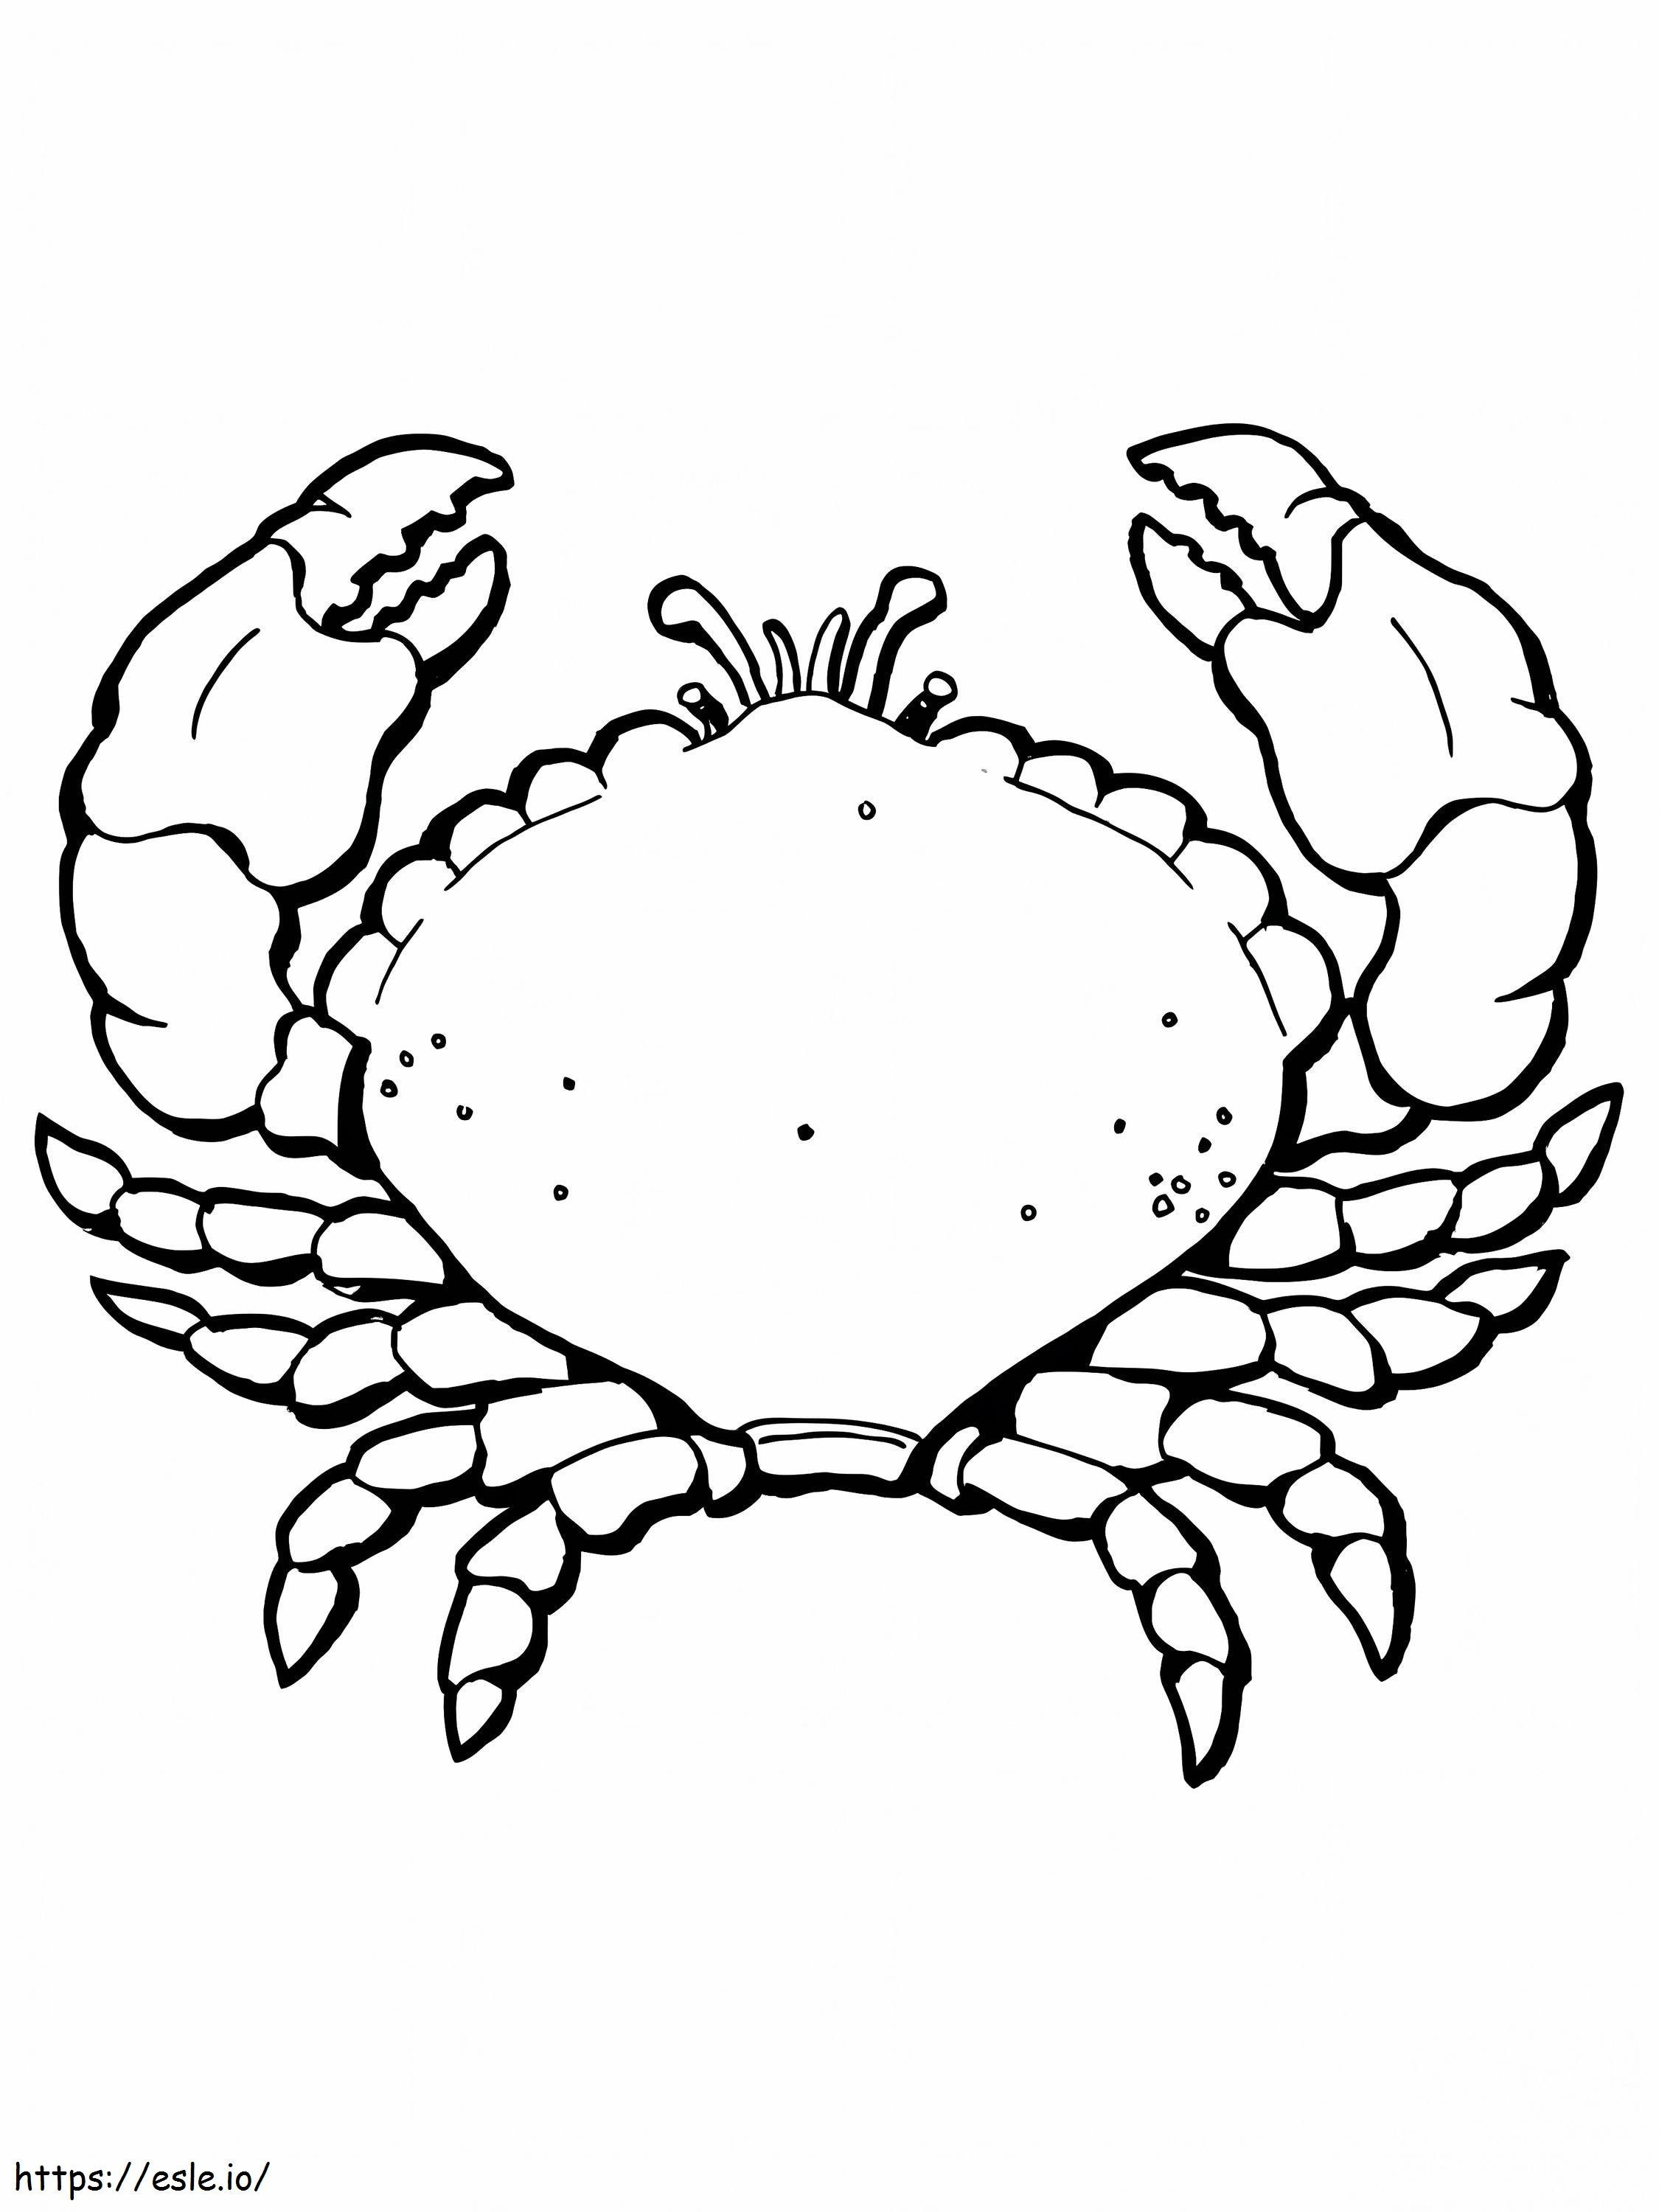 Einfache Krabbe ausmalbilder